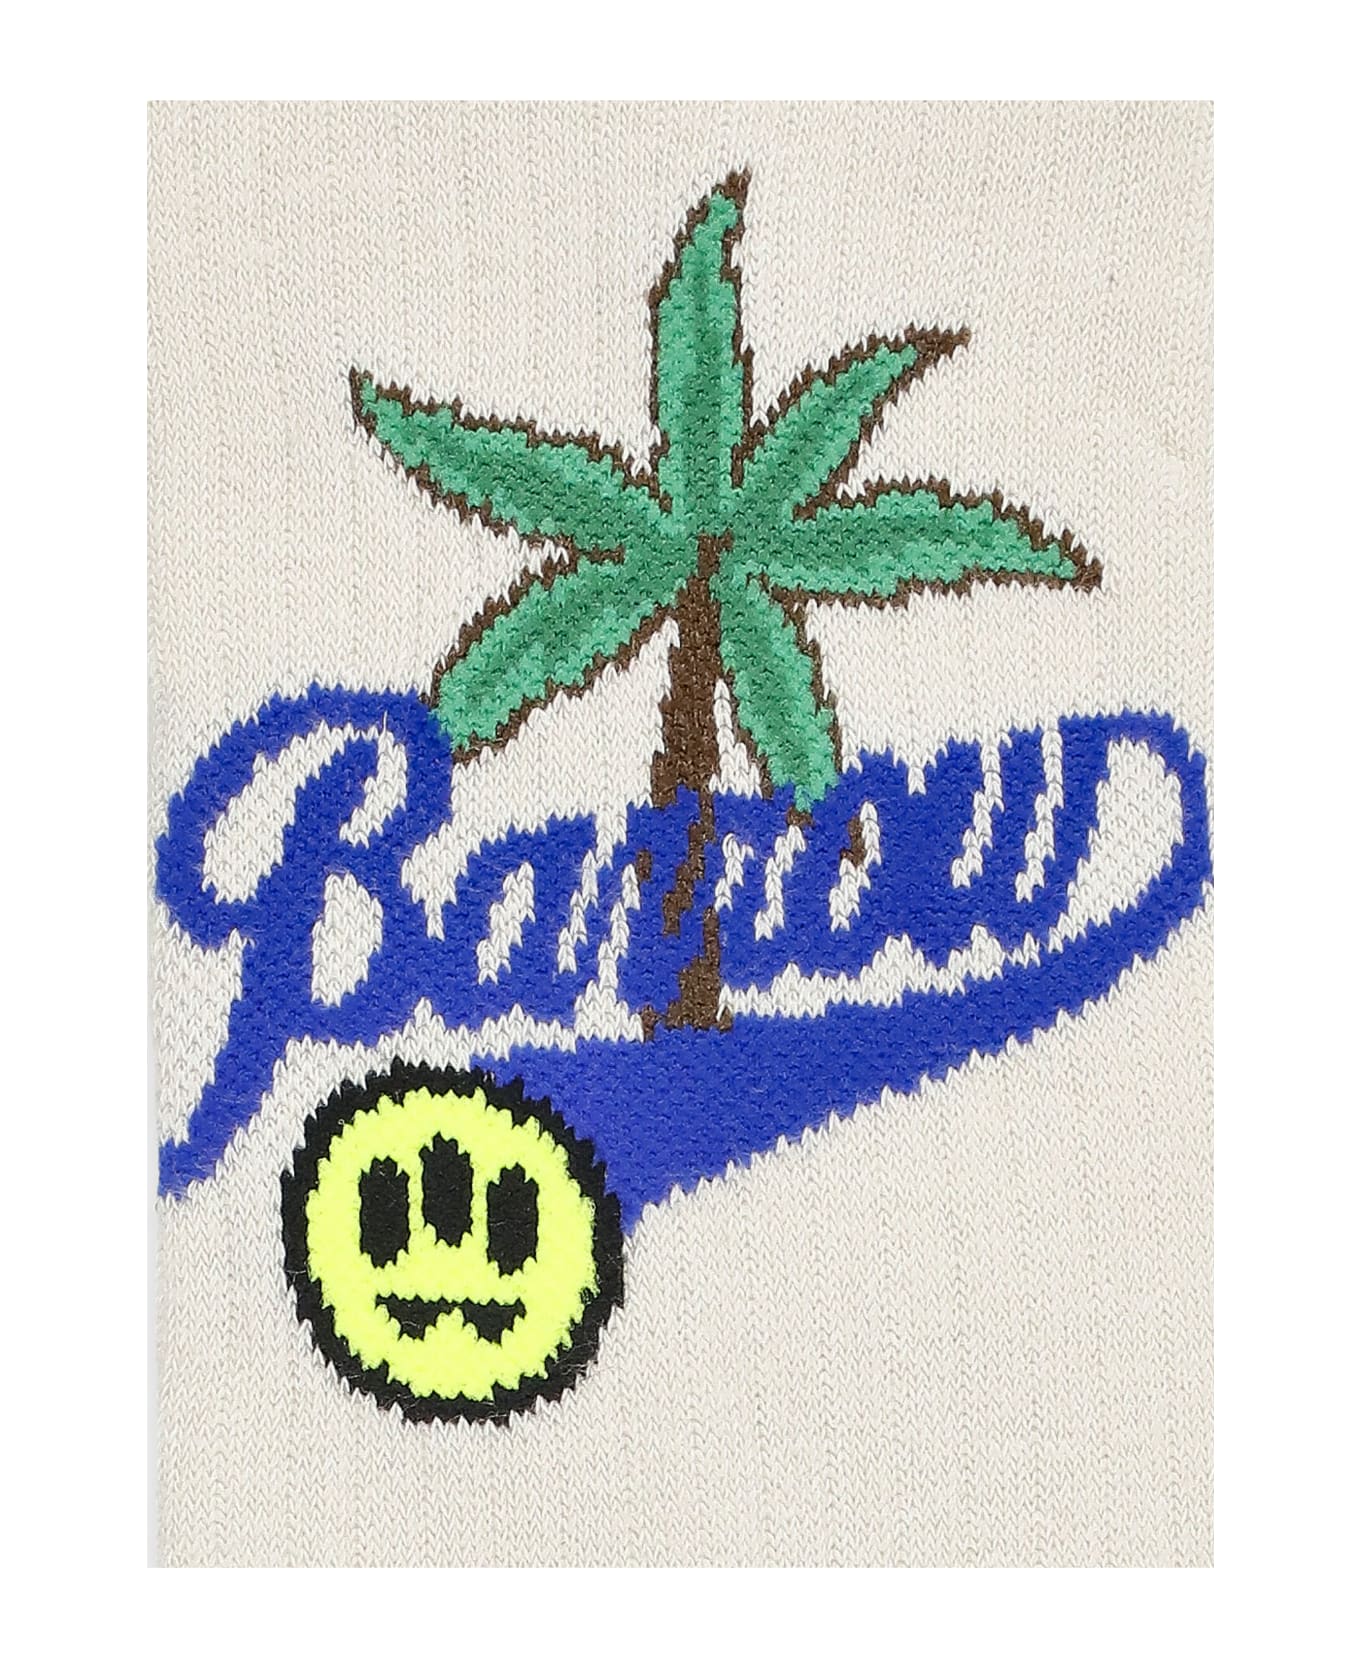 Barrow Logoed Socks - Beige